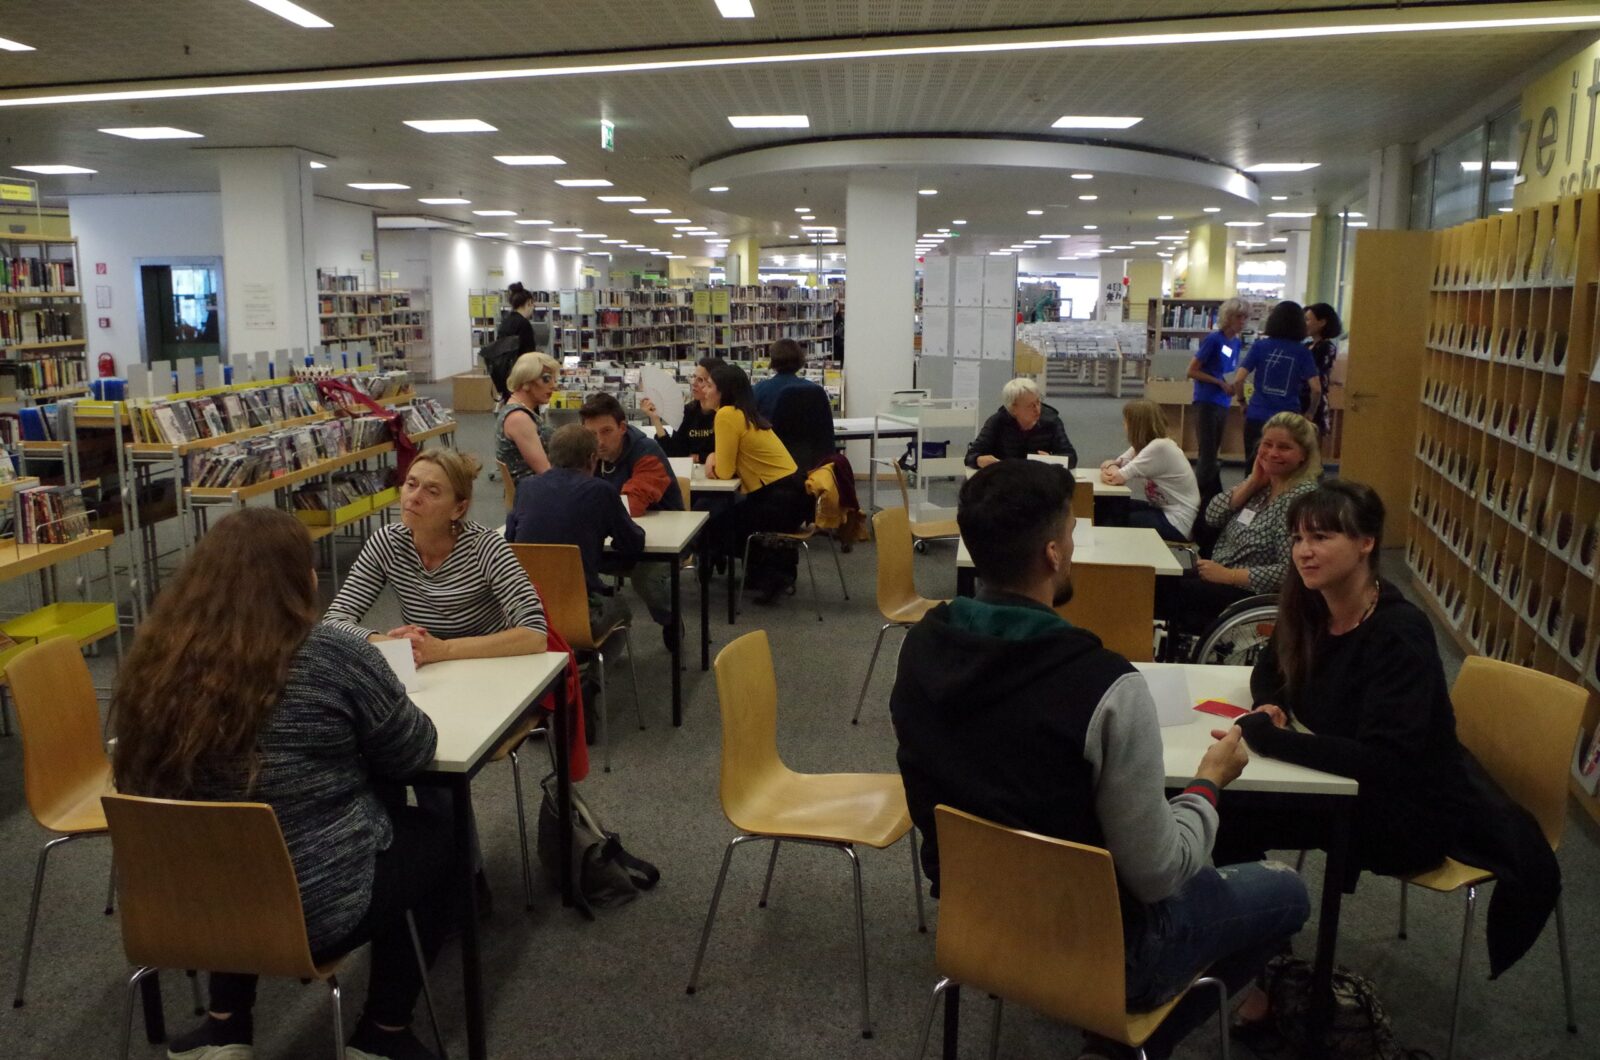 Einige Personen unterhalten sich zu zweit an Tischen in einer Bibliothek.